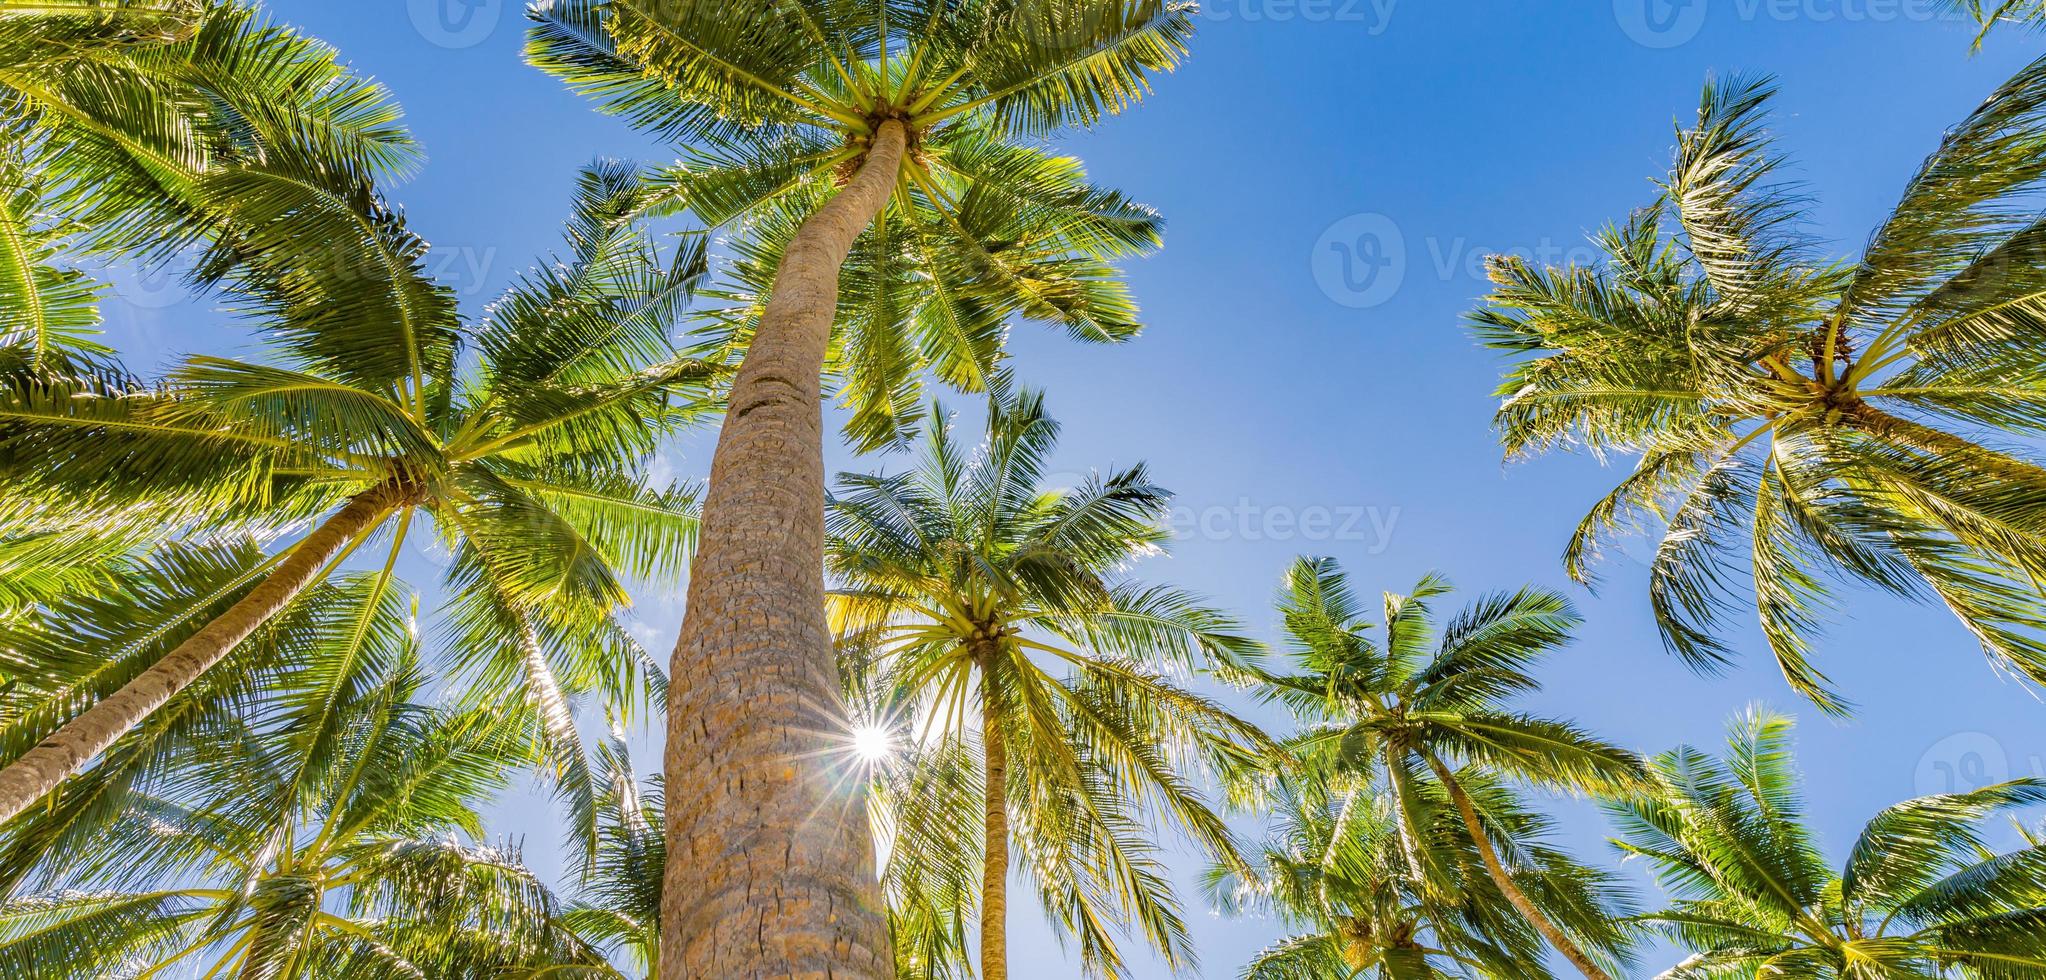 ambiance romantique de palmier tropical avec la lumière du soleil sur fond de ciel. feuillage exotique au coucher du soleil en plein air, paysage naturel en gros plan. cocotiers et soleil brillant sur un ciel lumineux. été printemps nature photo